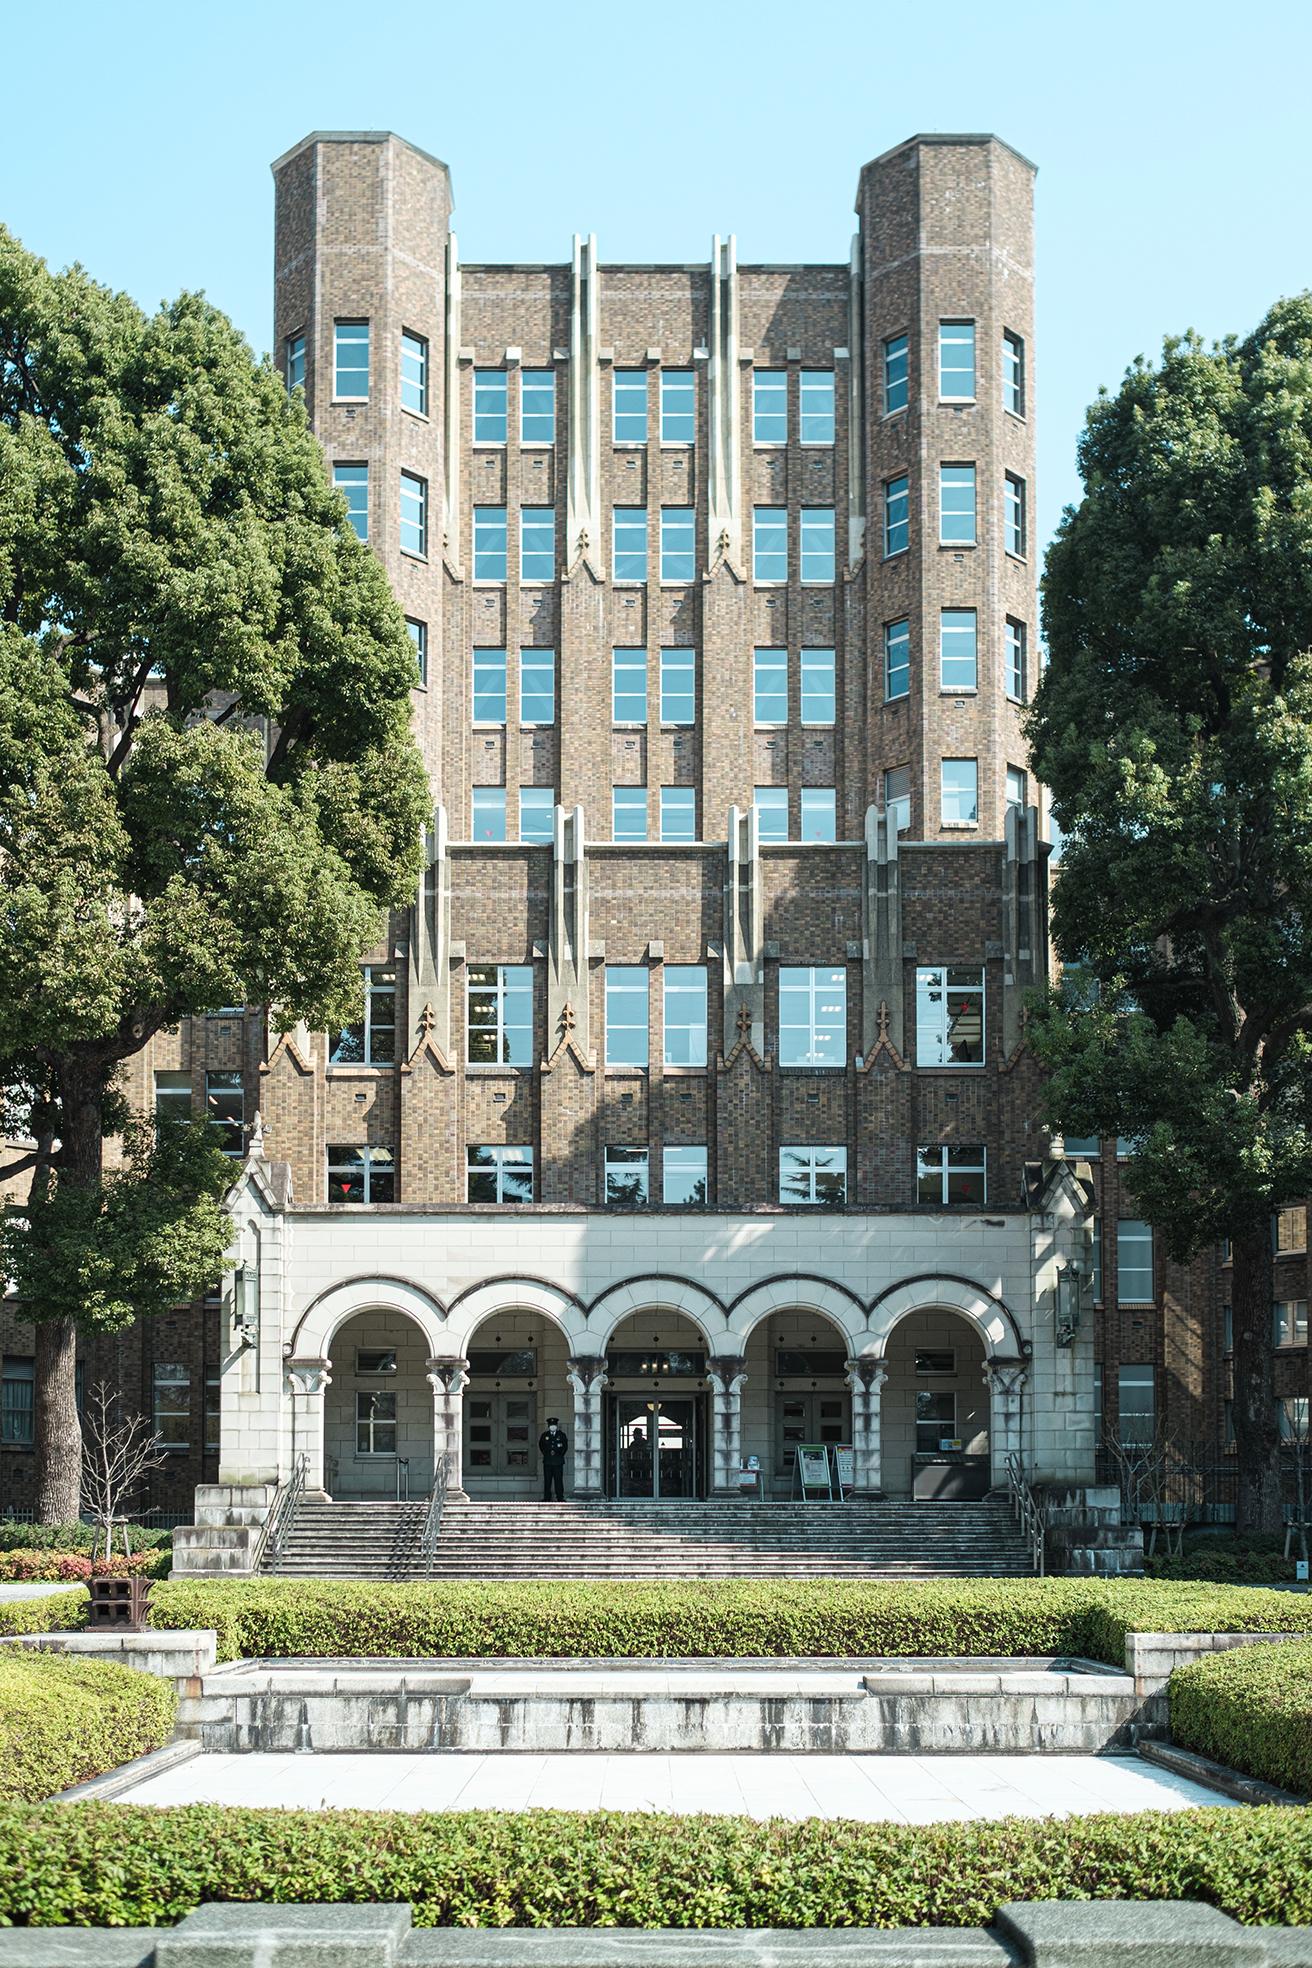 〈港区立郷土歴史館・旧公衆衛生院〉は、18世紀頃のゴシックリバイバルの流れを汲むアメリカの大学などの建築様式に近い。